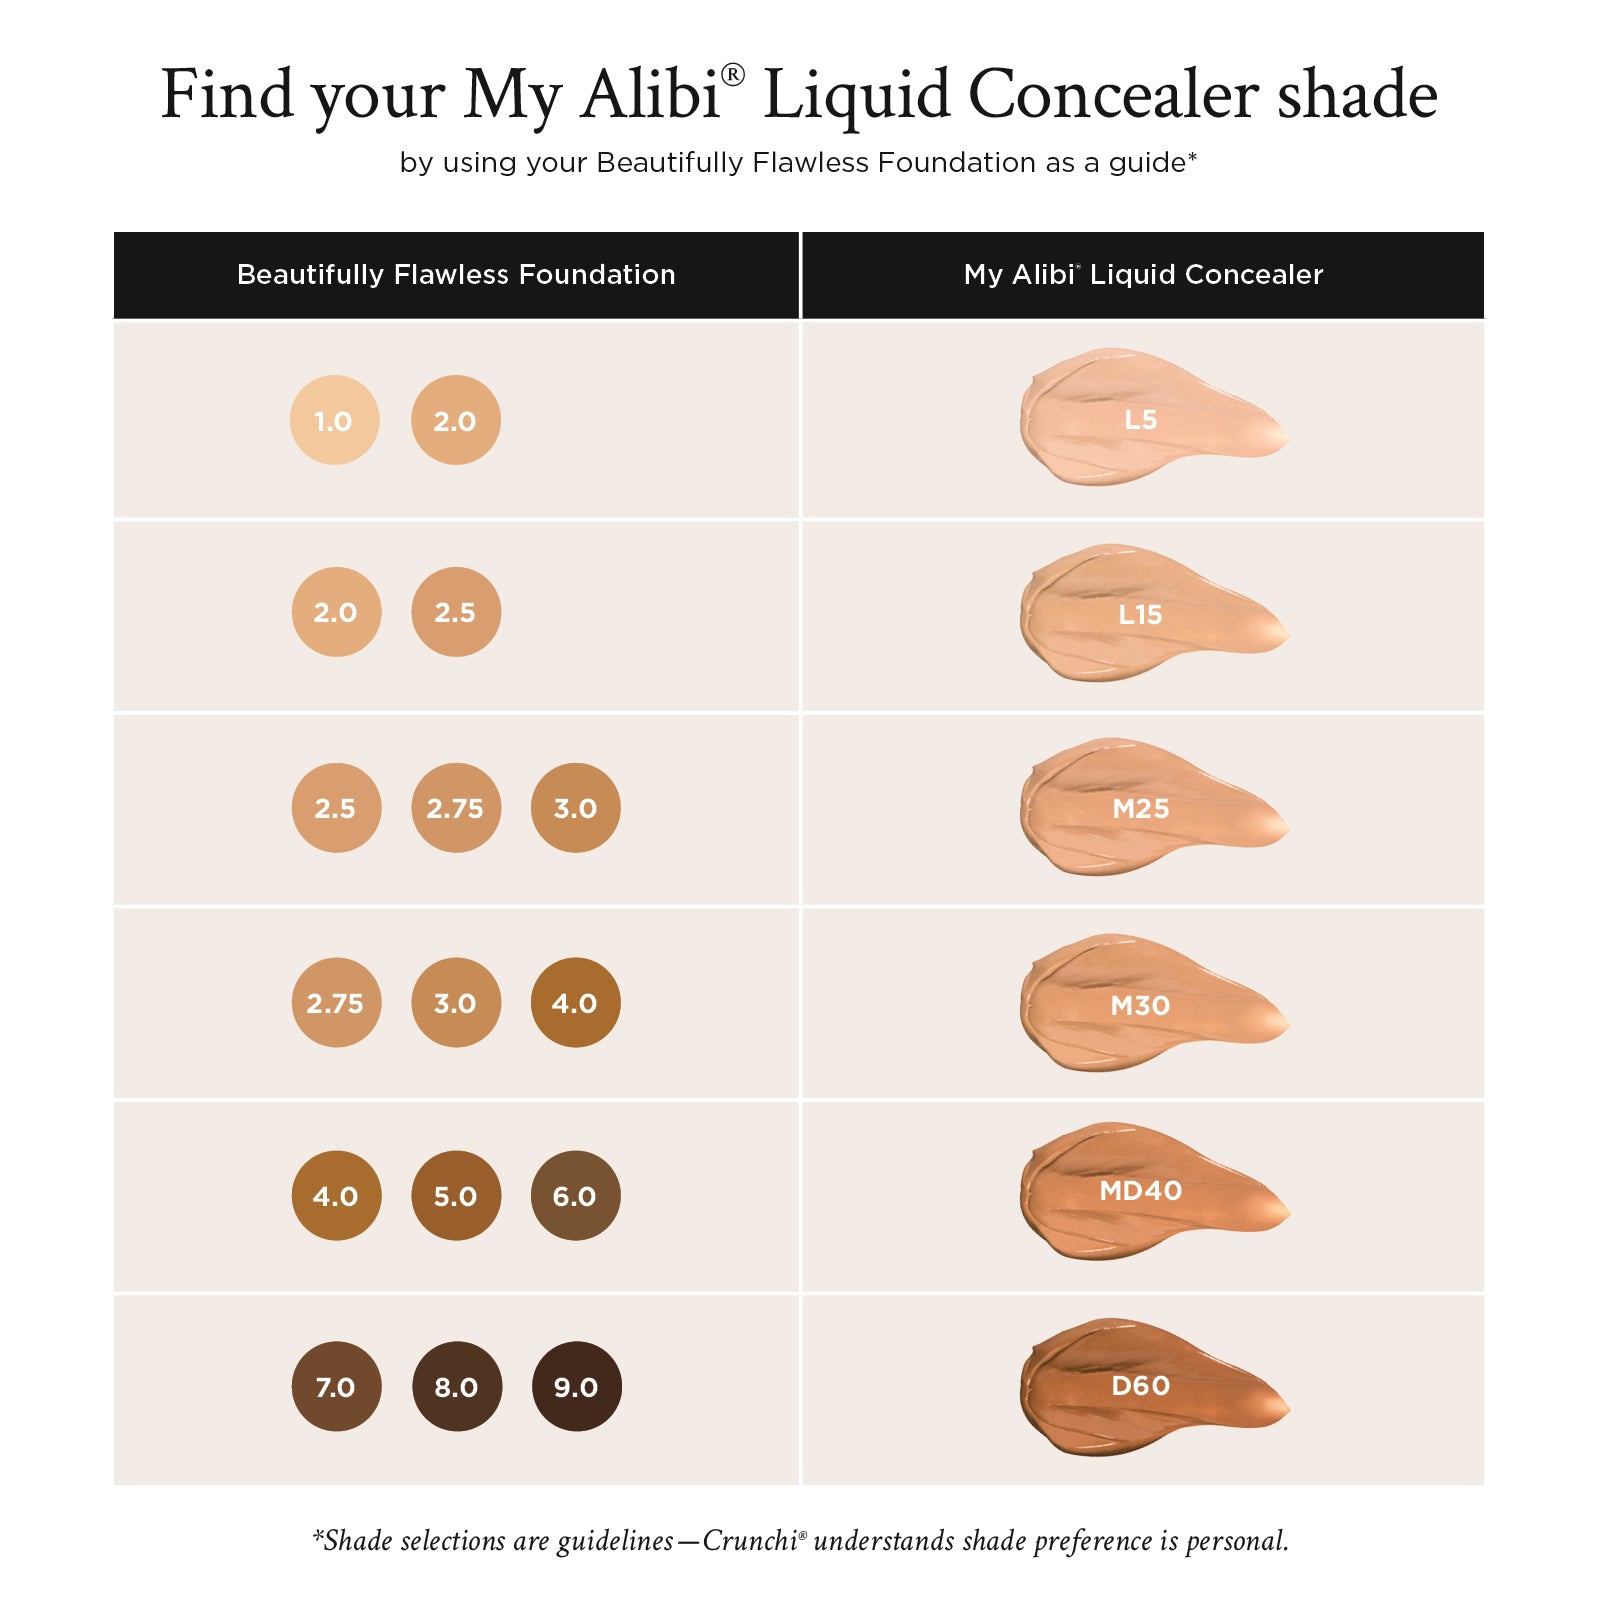 My Alibi® Liquid Concealer